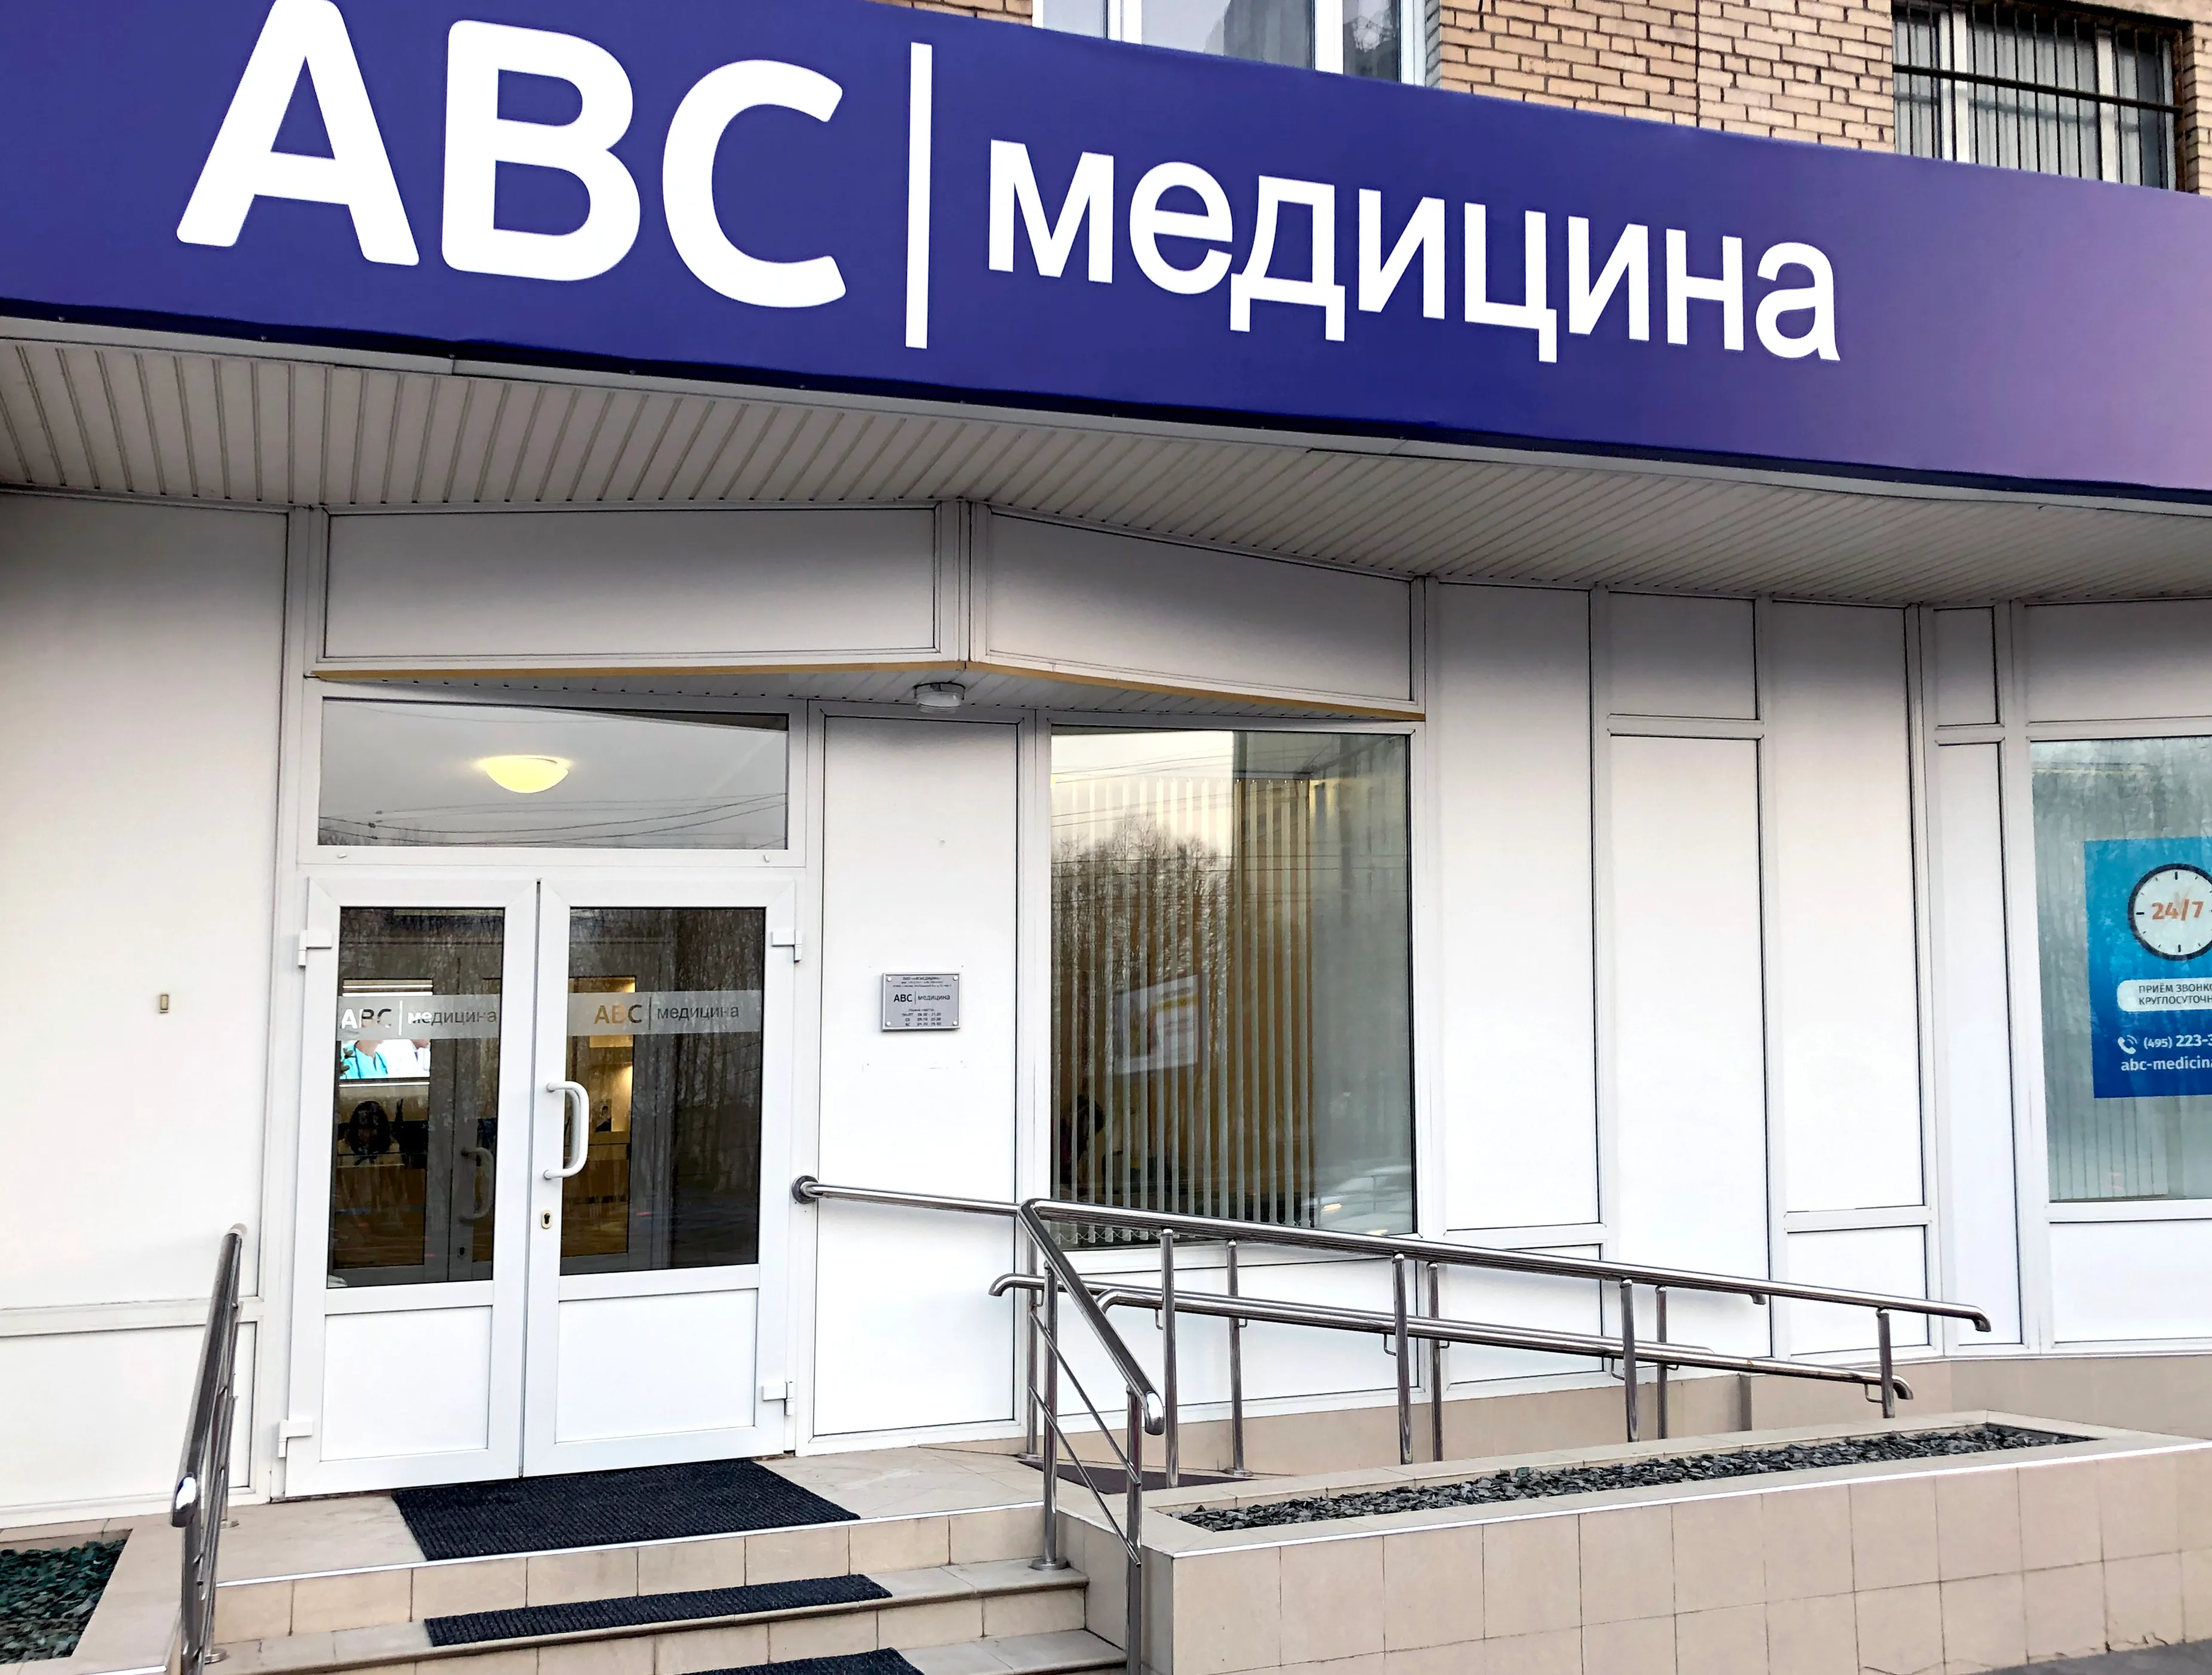 ABC медицина на Проспекте Вернадского